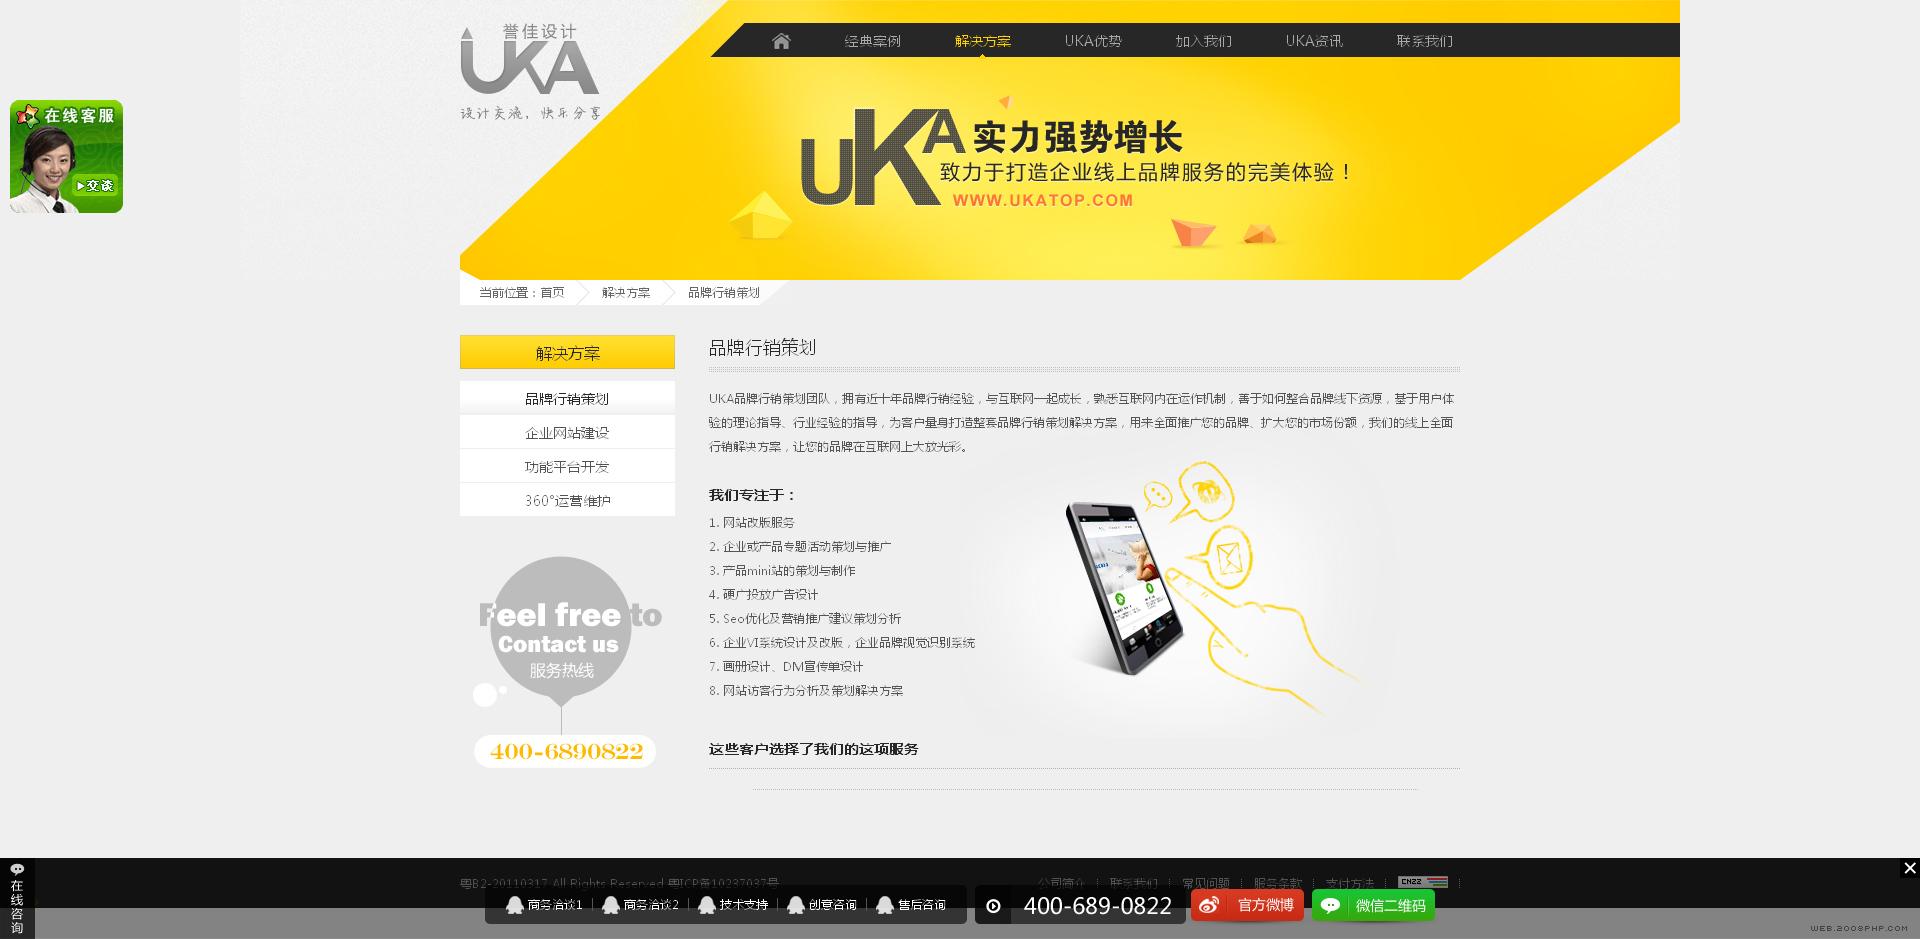 深圳誉佳高端创意设计有限公司官方网站!很时